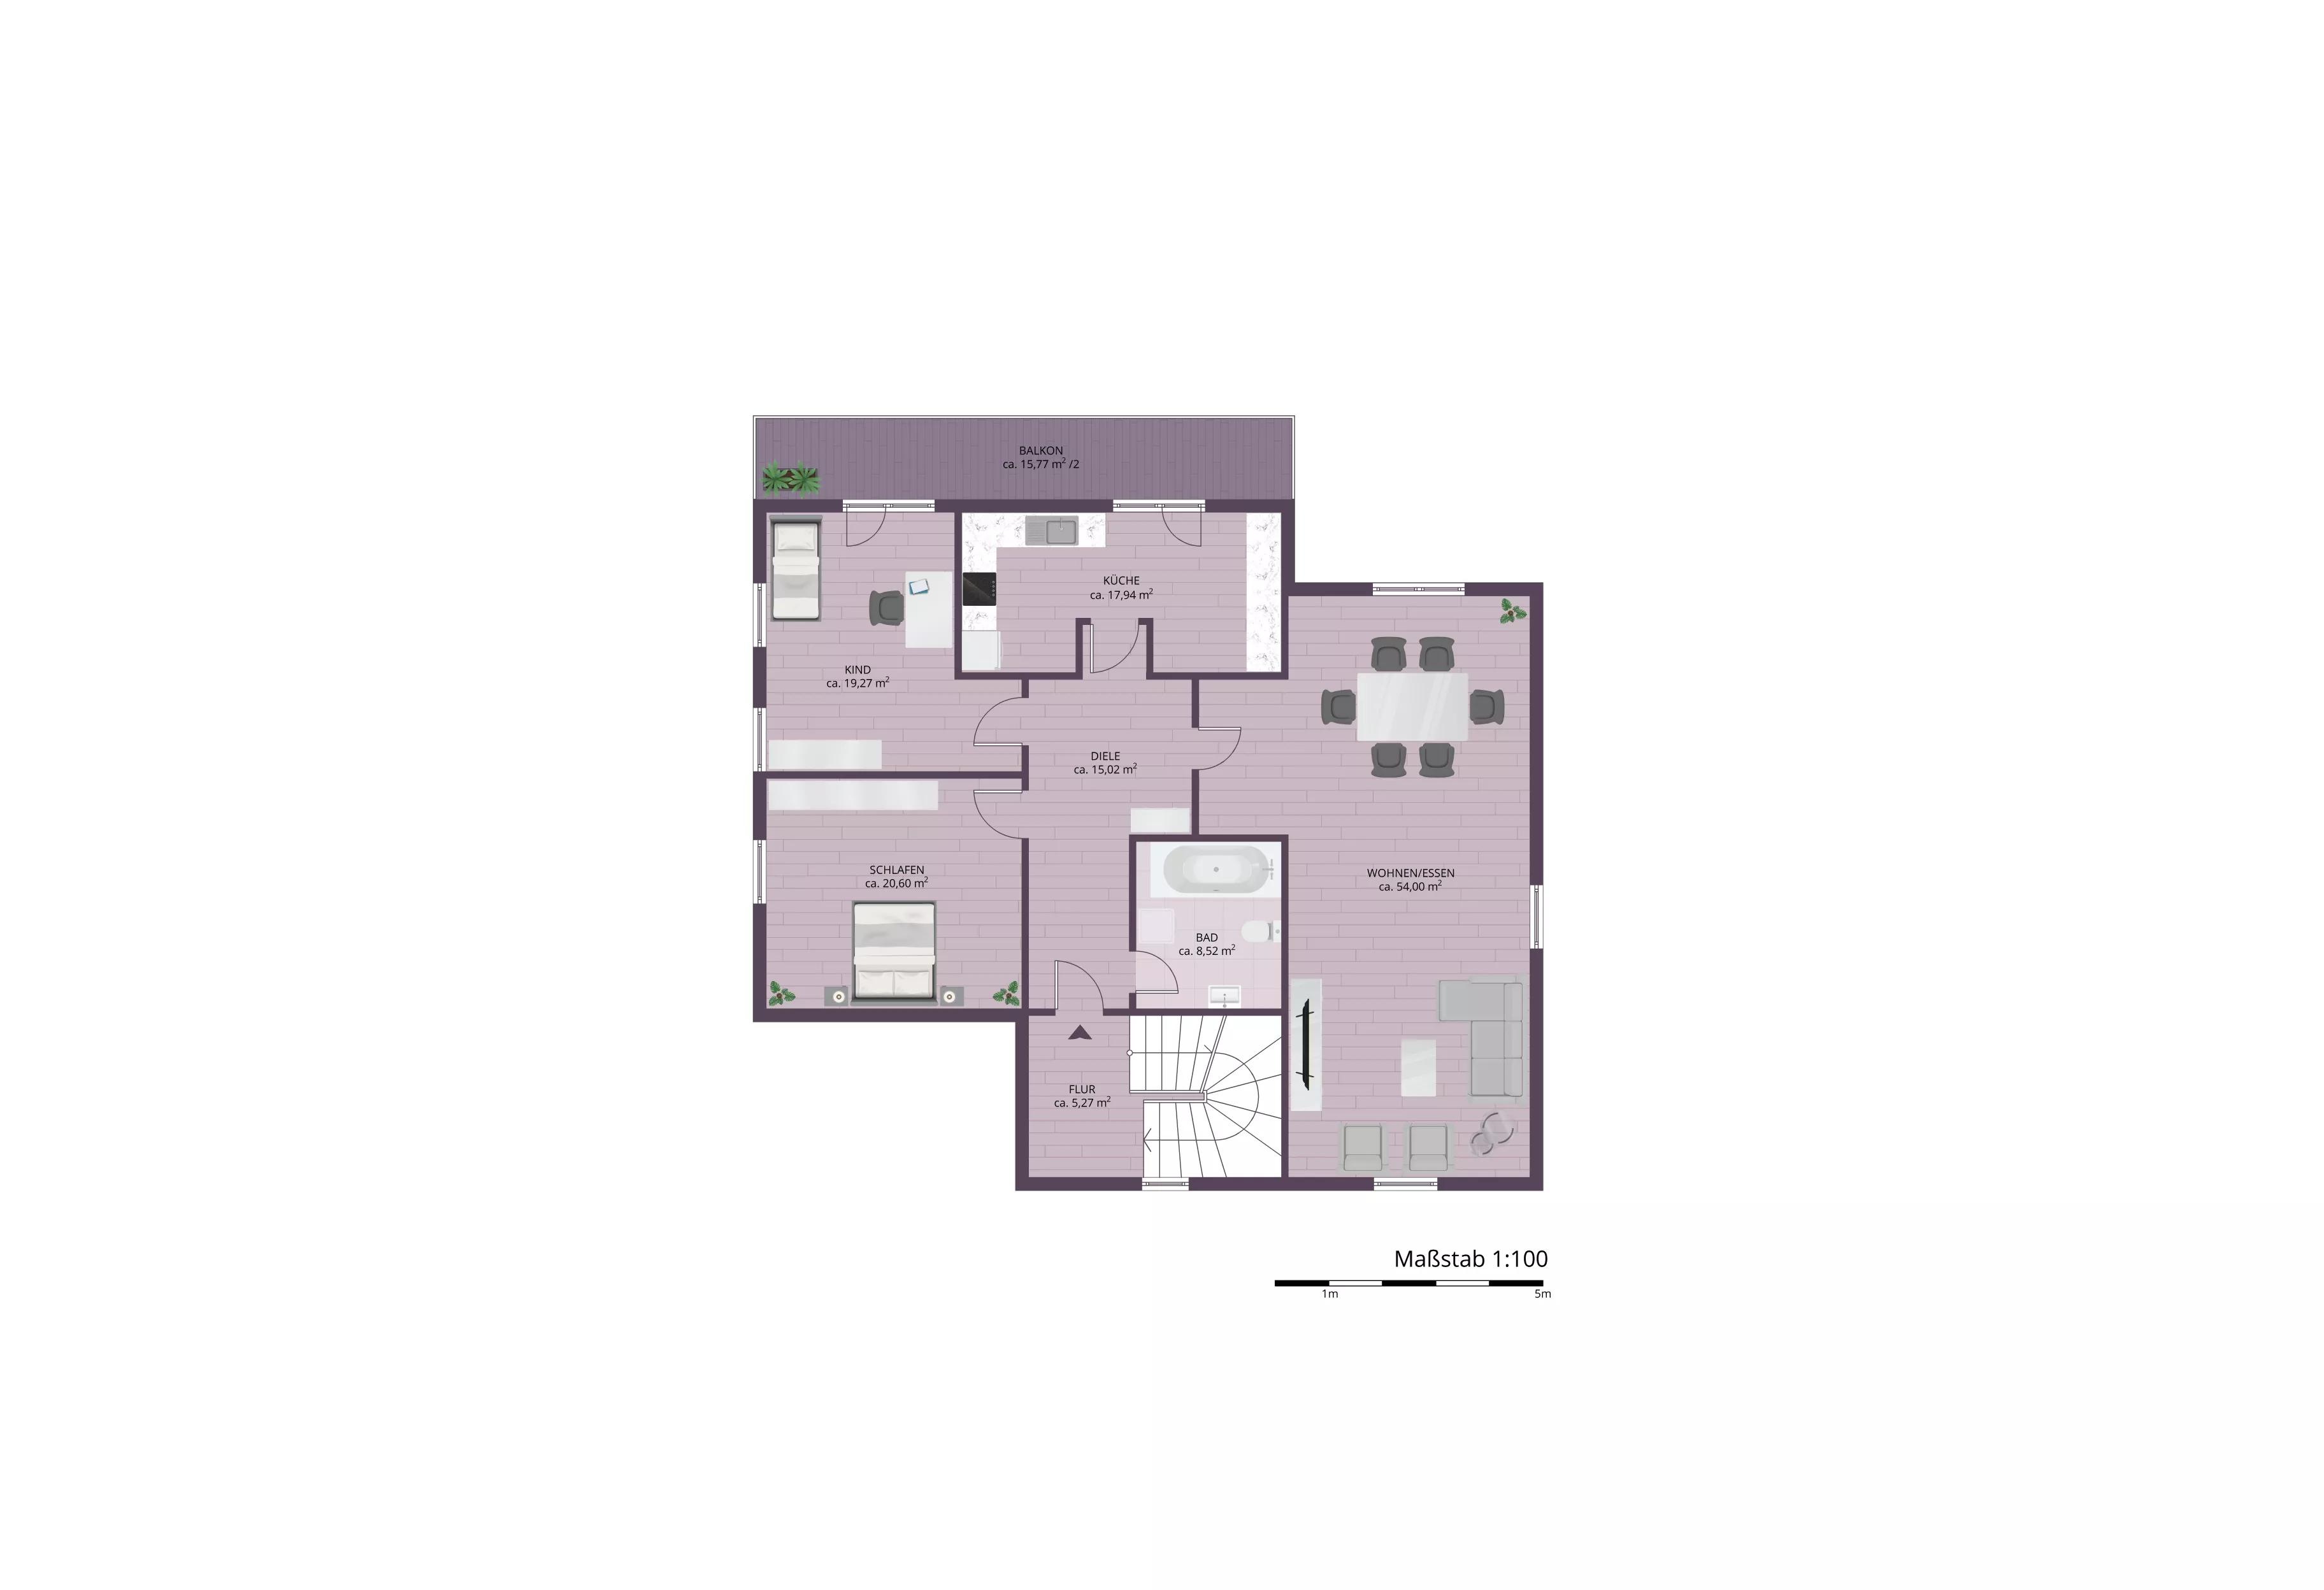 Mehrfamilienhaus GB10, Obergeschoss